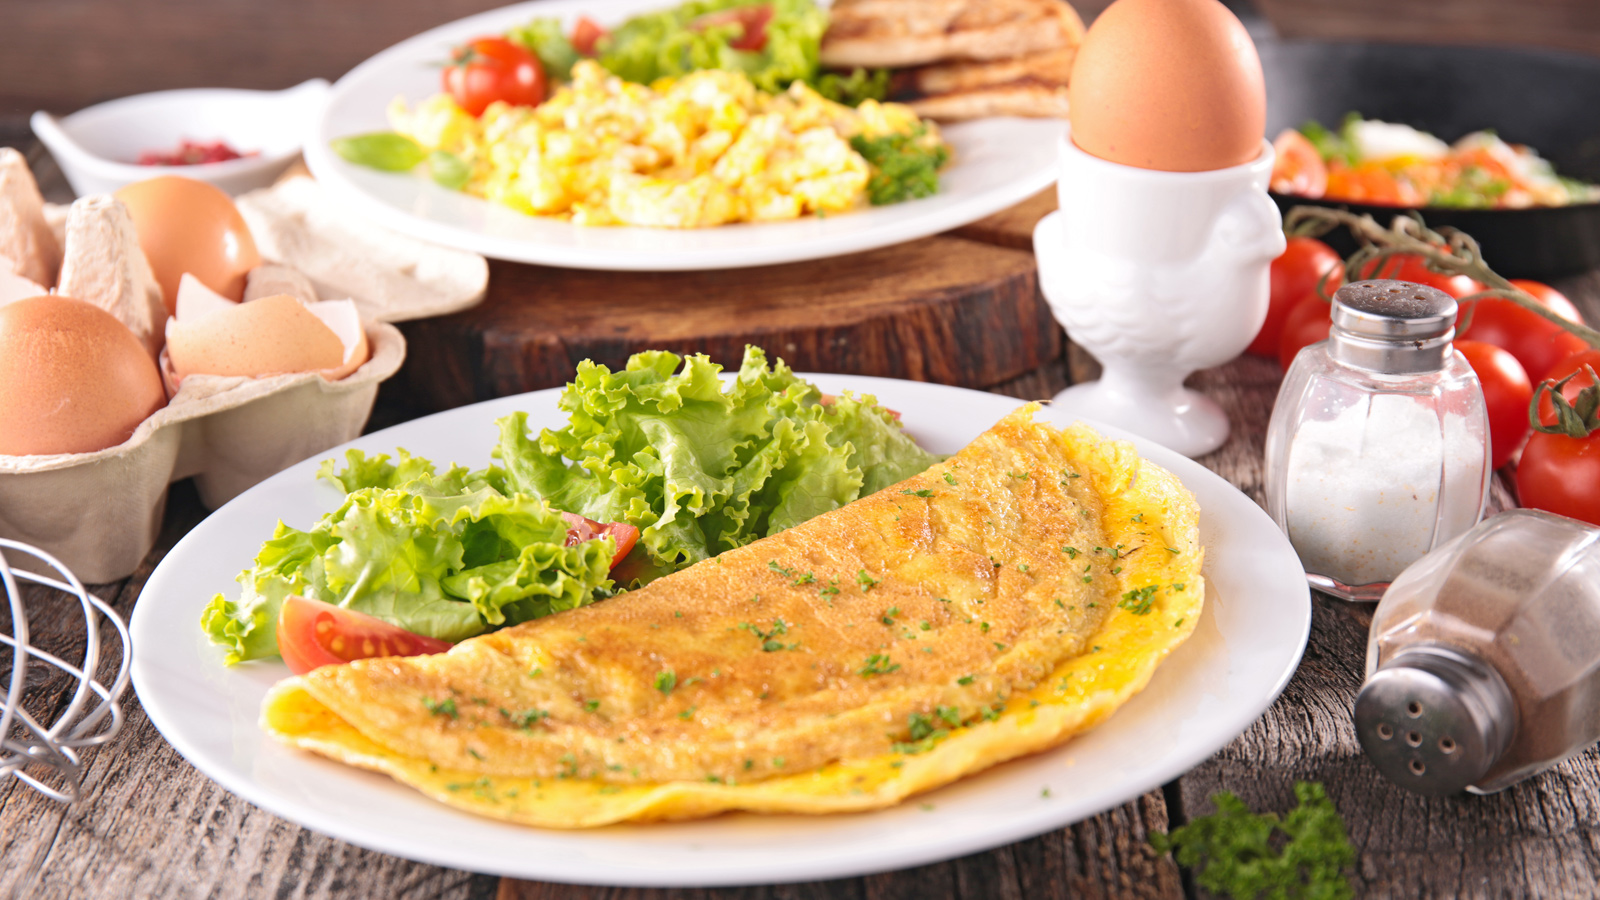 Thực đơn giảm cân với trứng không chỉ có riêng trứng luộc mà còn rất nhiều các món ăn hấp dẫn khác được chế biến với trứng đến cả các gymer cũng mê mẩn.